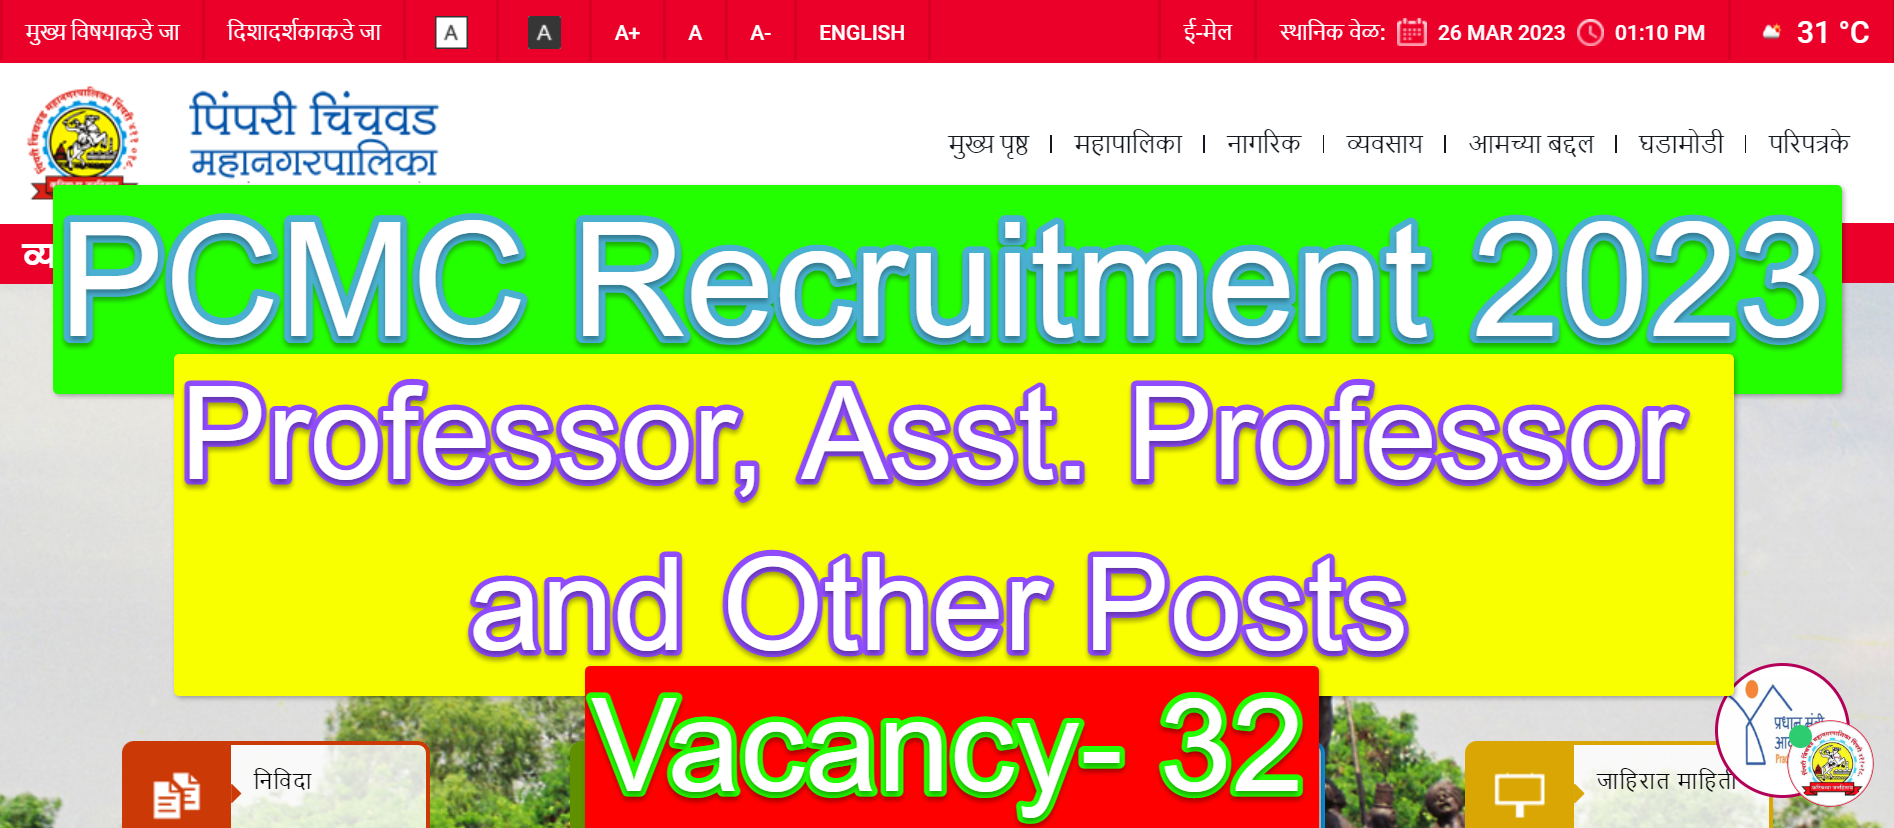 PCMC Recruitment 2023 - Professor, Asst. Professor and Other Posts